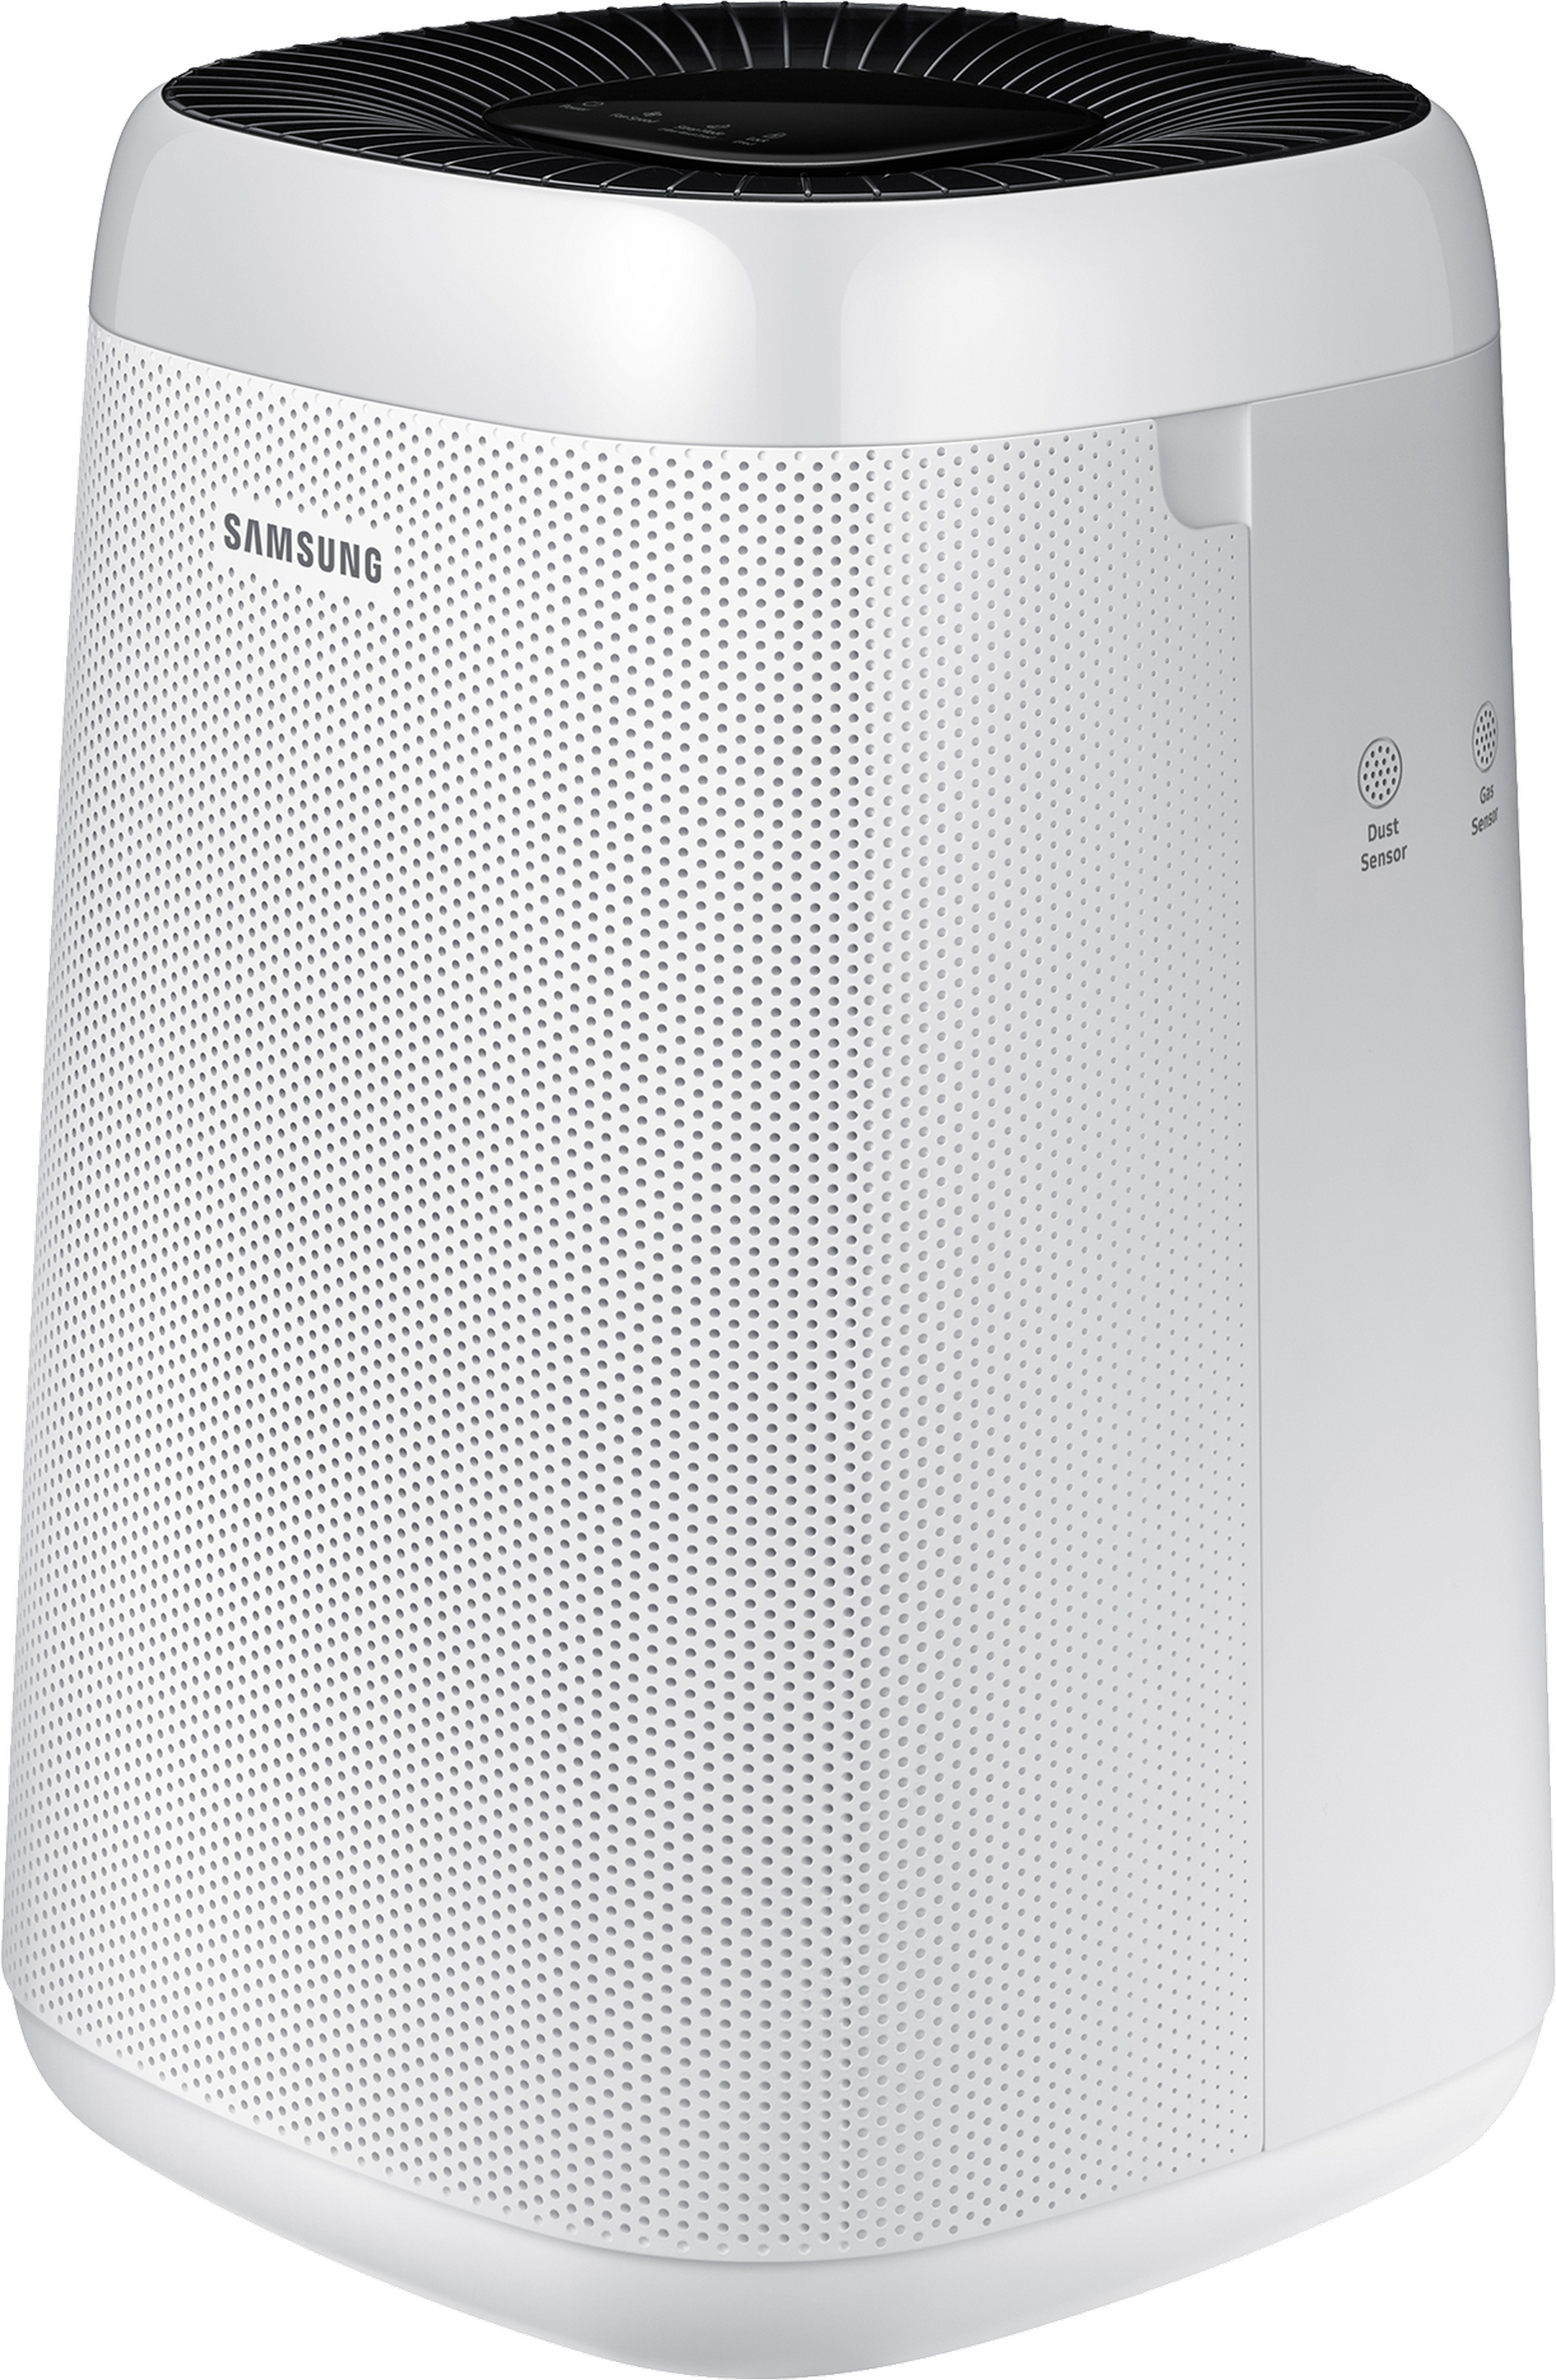 Очищувач повітря Samsung AX34T3020WW/ER характеристики - фотографія 7